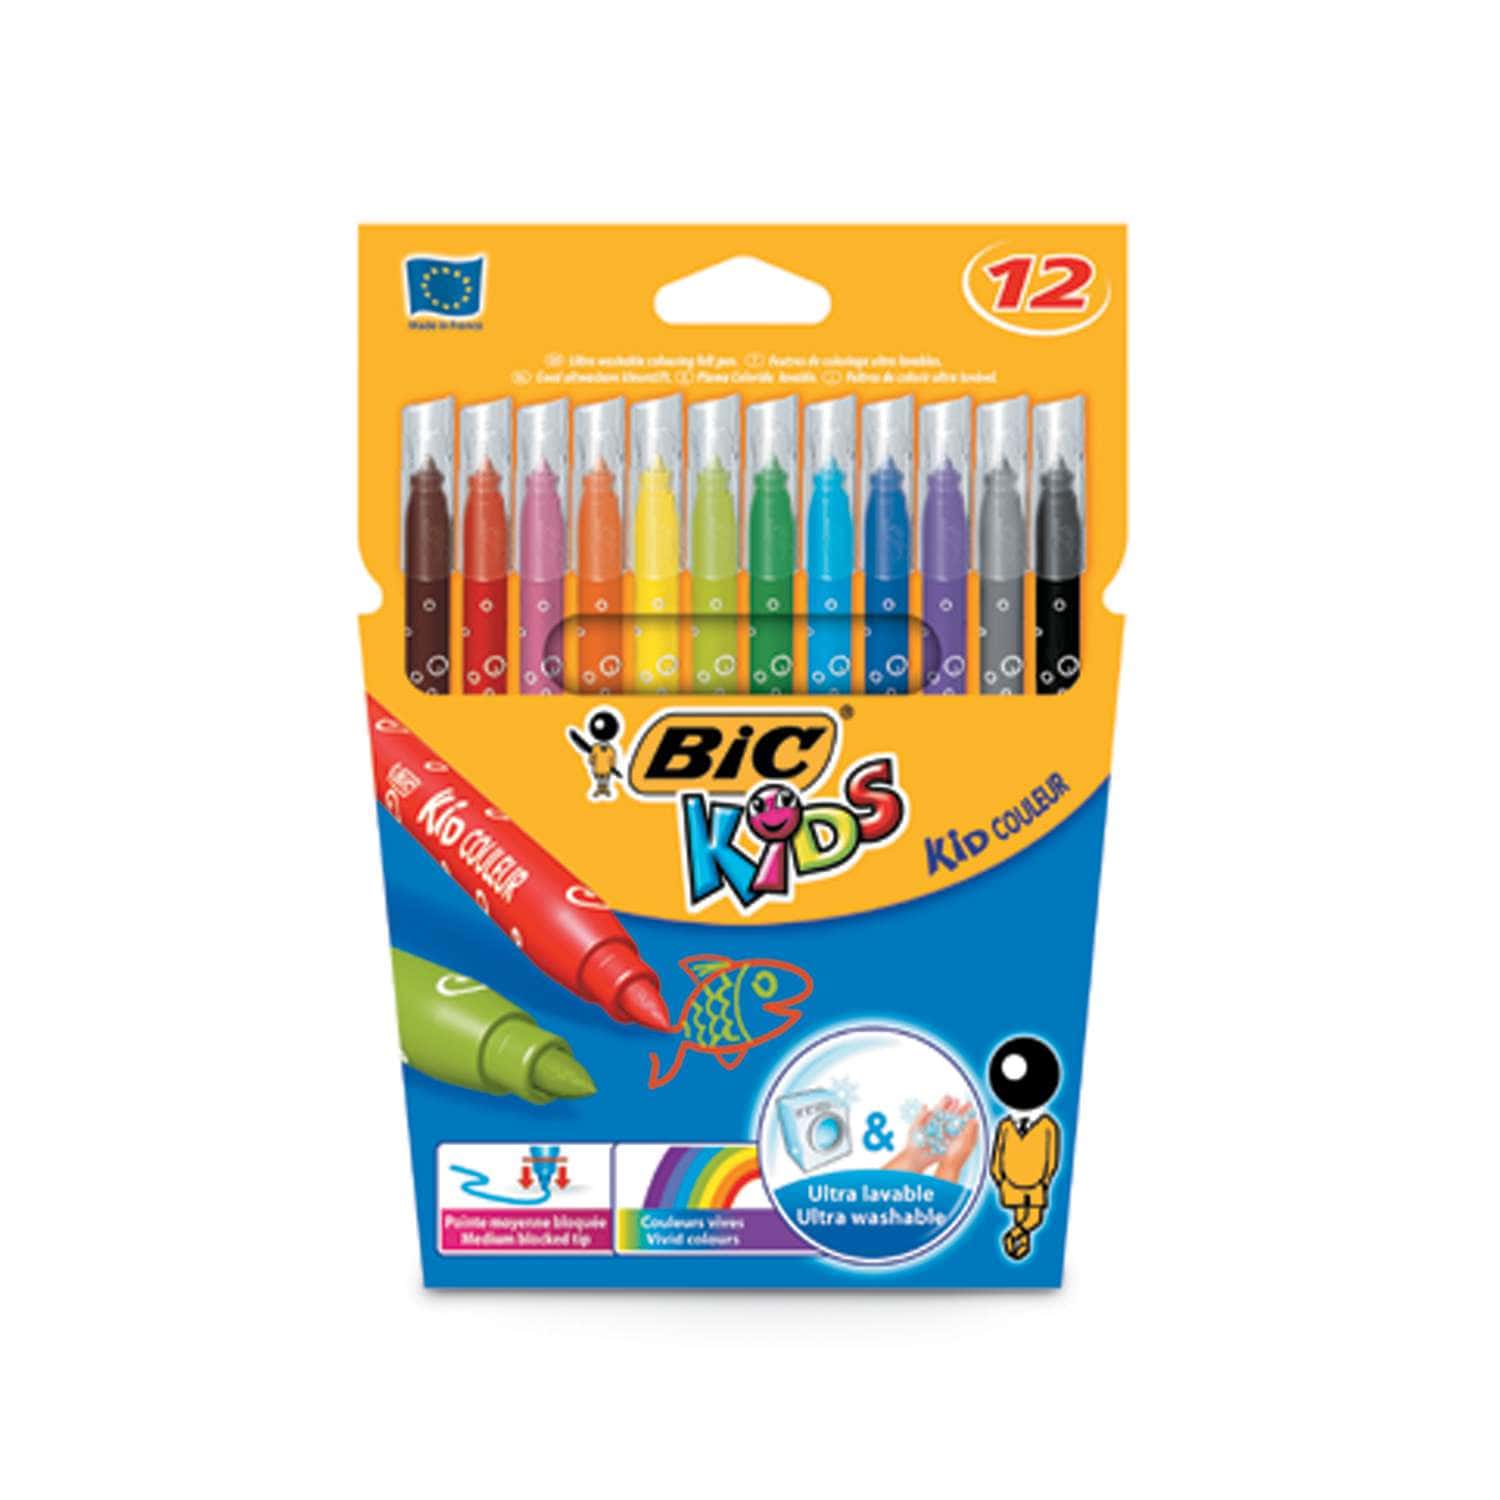 Etui 18 feutres coloriage pointe fine Bic Kids - Feutres de coloriage Bic